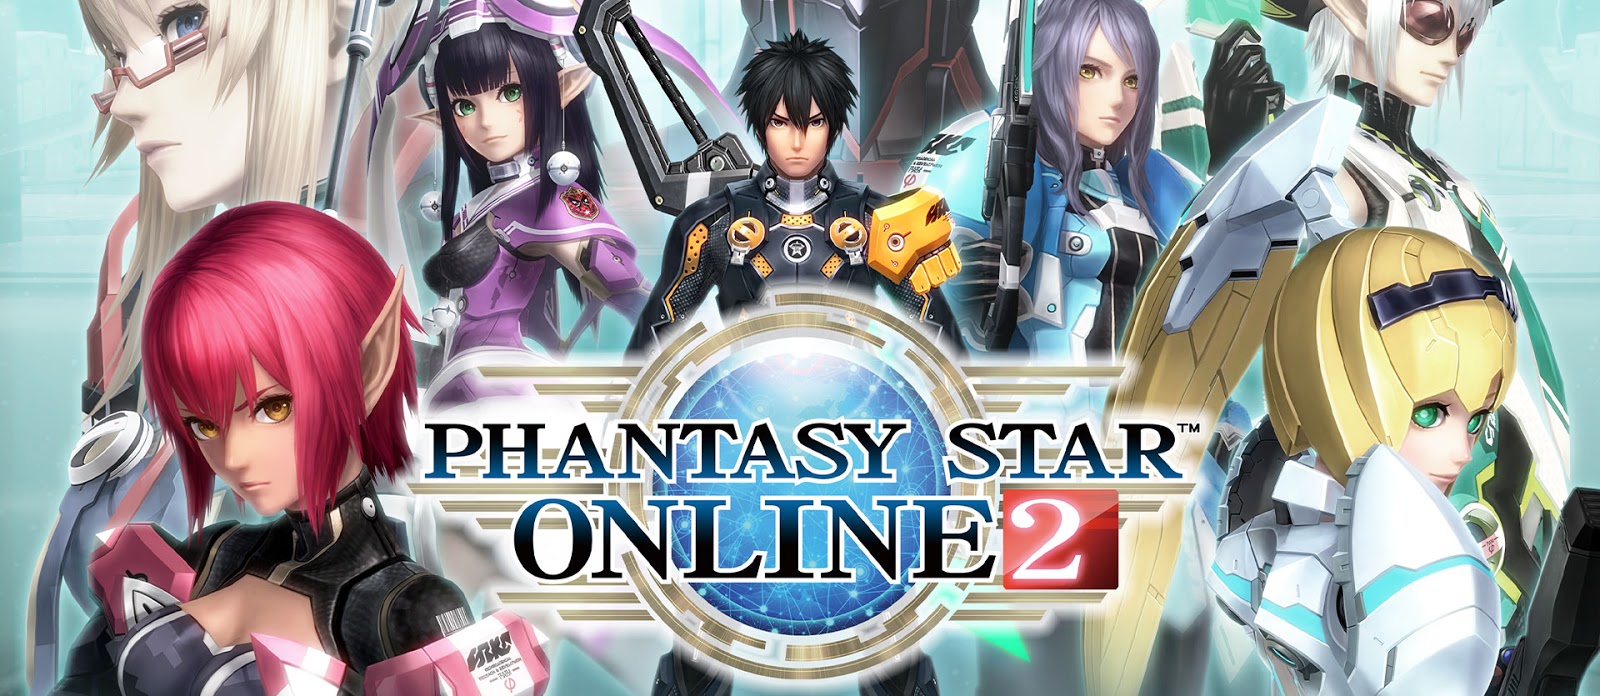 Microsoft fala sobre Phantasy Star Online 2 e sua busca por jogos